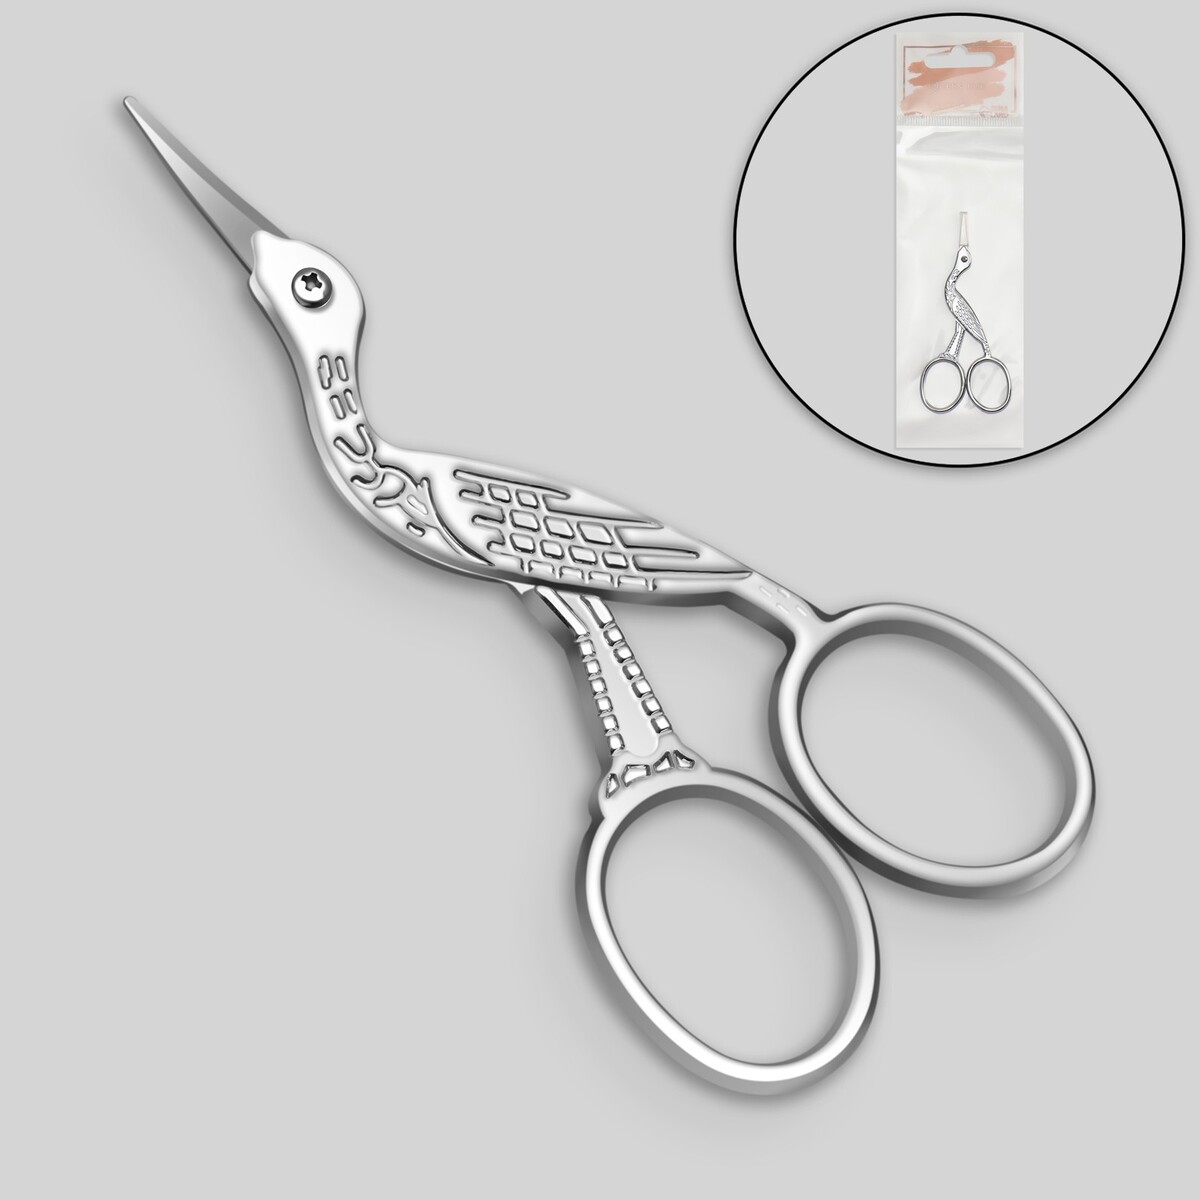 Ножницы маникюрные для шелка, 9 см, цвет серебристый пинцет в форме ножниц прорезиненные ручки 8 см на блистере серебристый